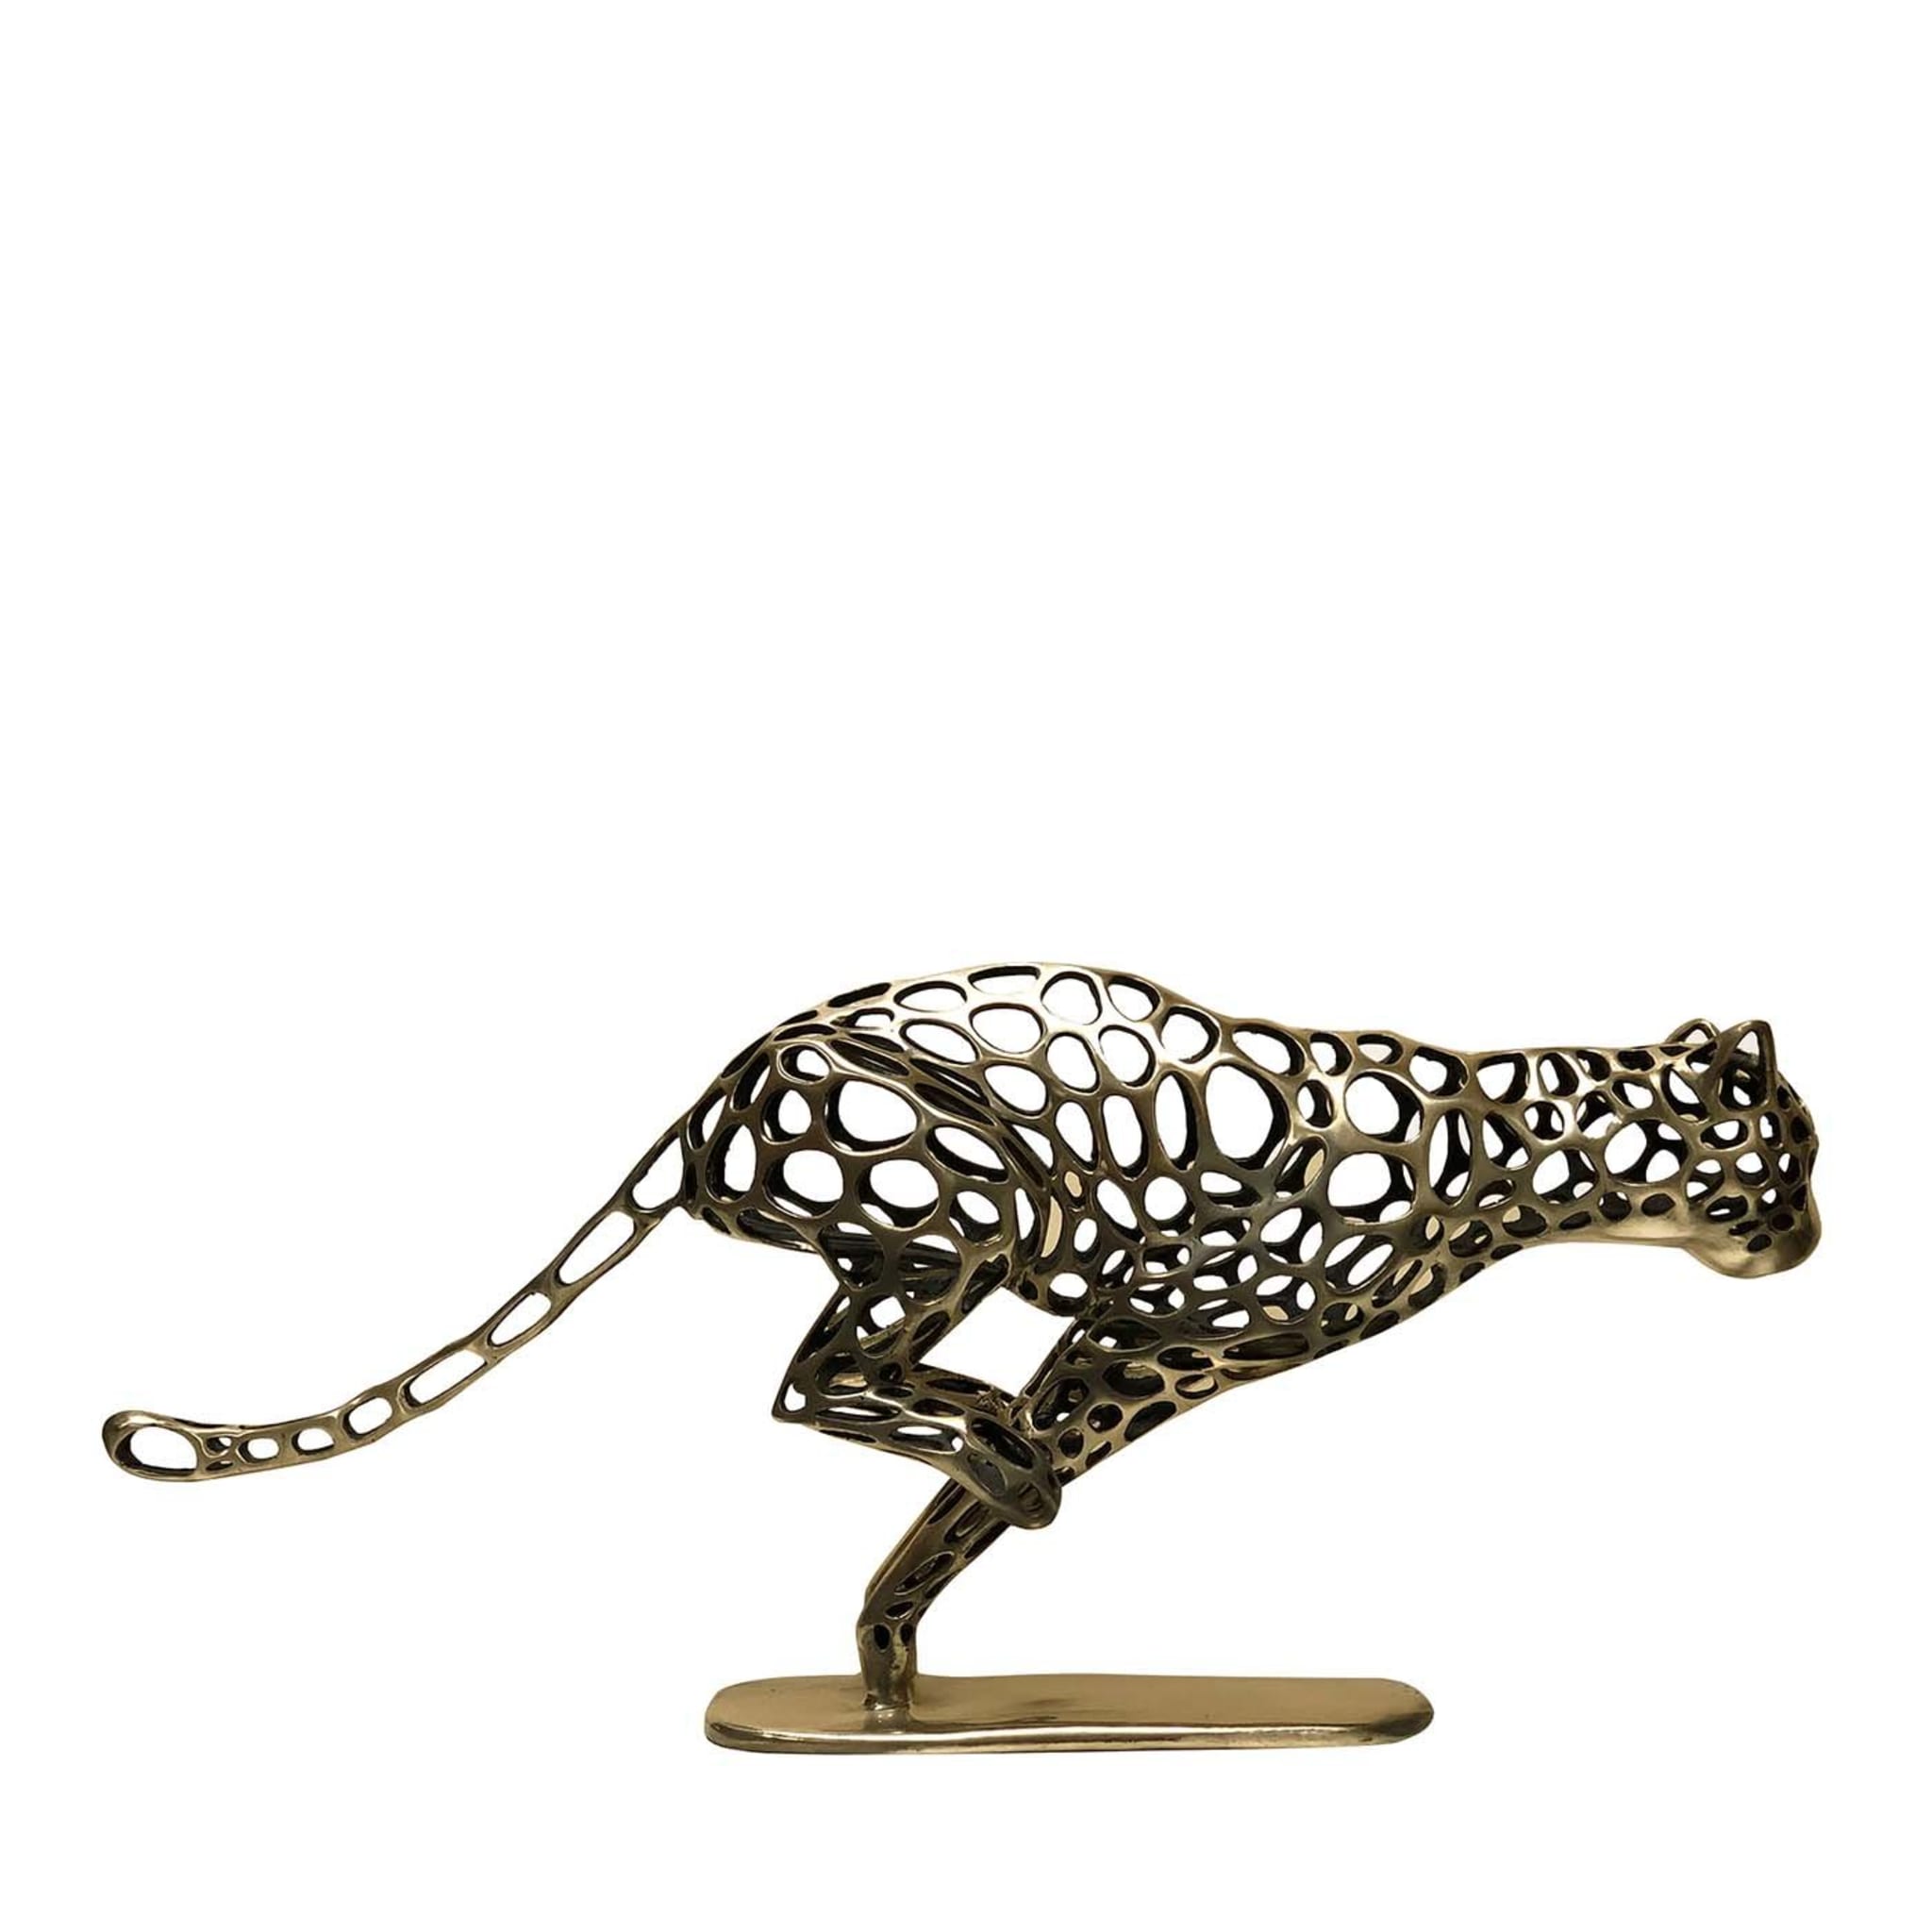 Sculpture de guépard courant - Vue principale